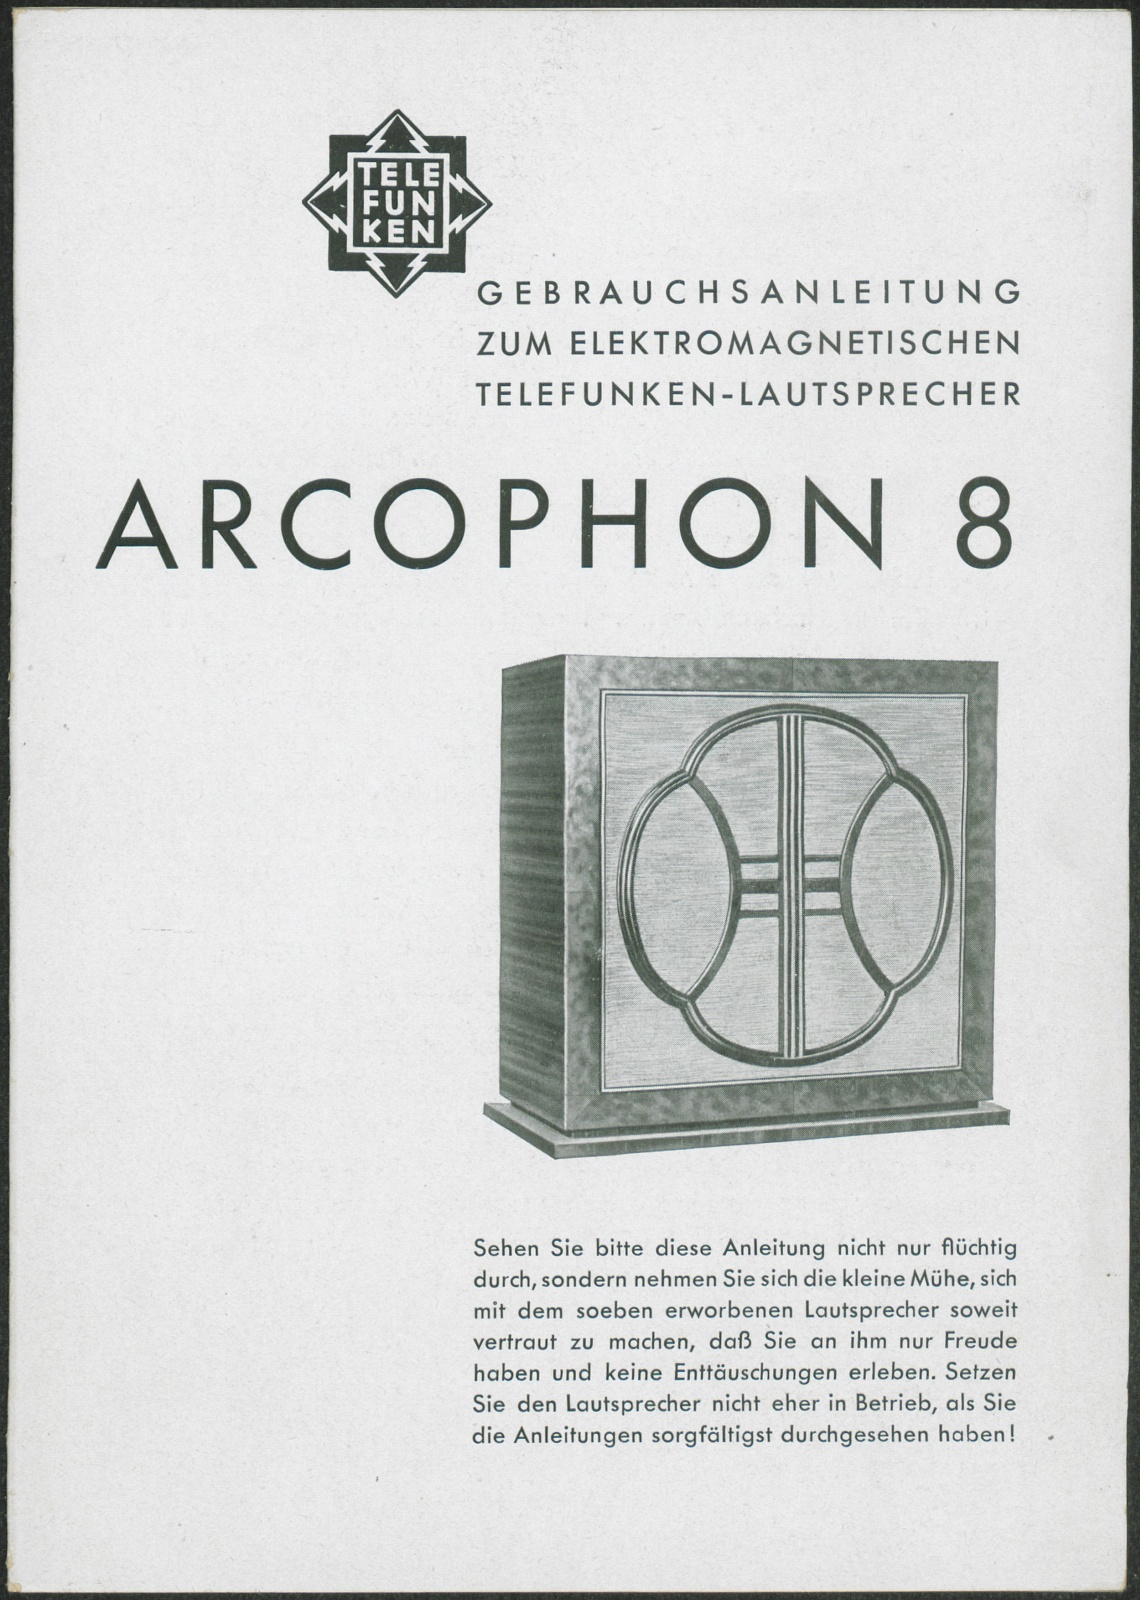 Bedienungsanleitung: Gebrauchsanweisung zum elektromagnetischen Telefunken-Lautsprecher Arcophon 8 (Stiftung Deutsches Technikmuseum Berlin CC0)